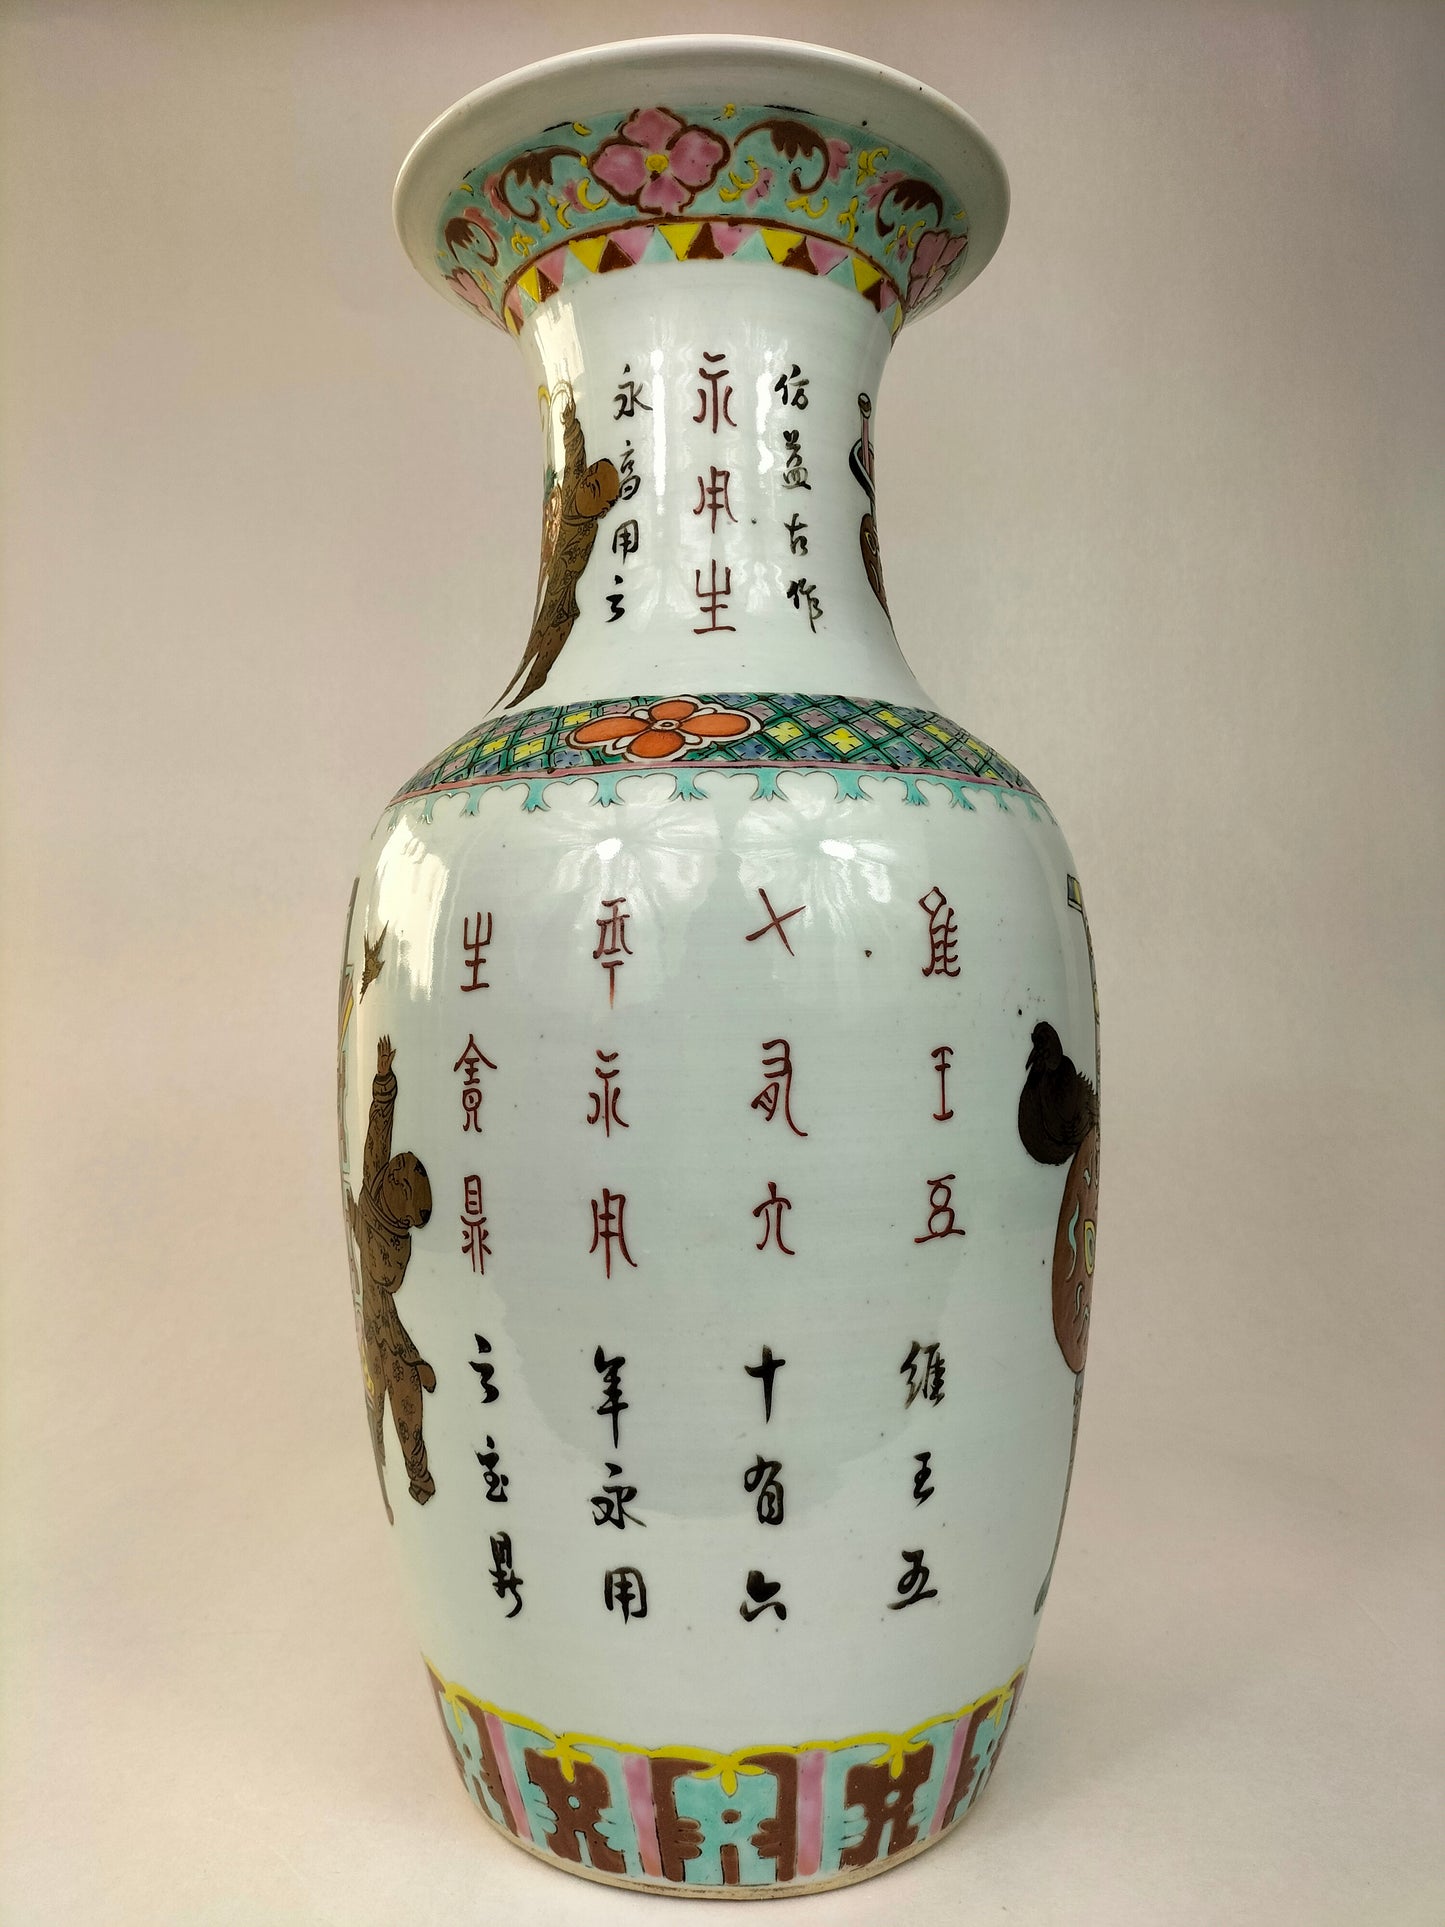 古董中国粉彩花瓶，饰有花篮和人物 // 清朝 - 19 世纪